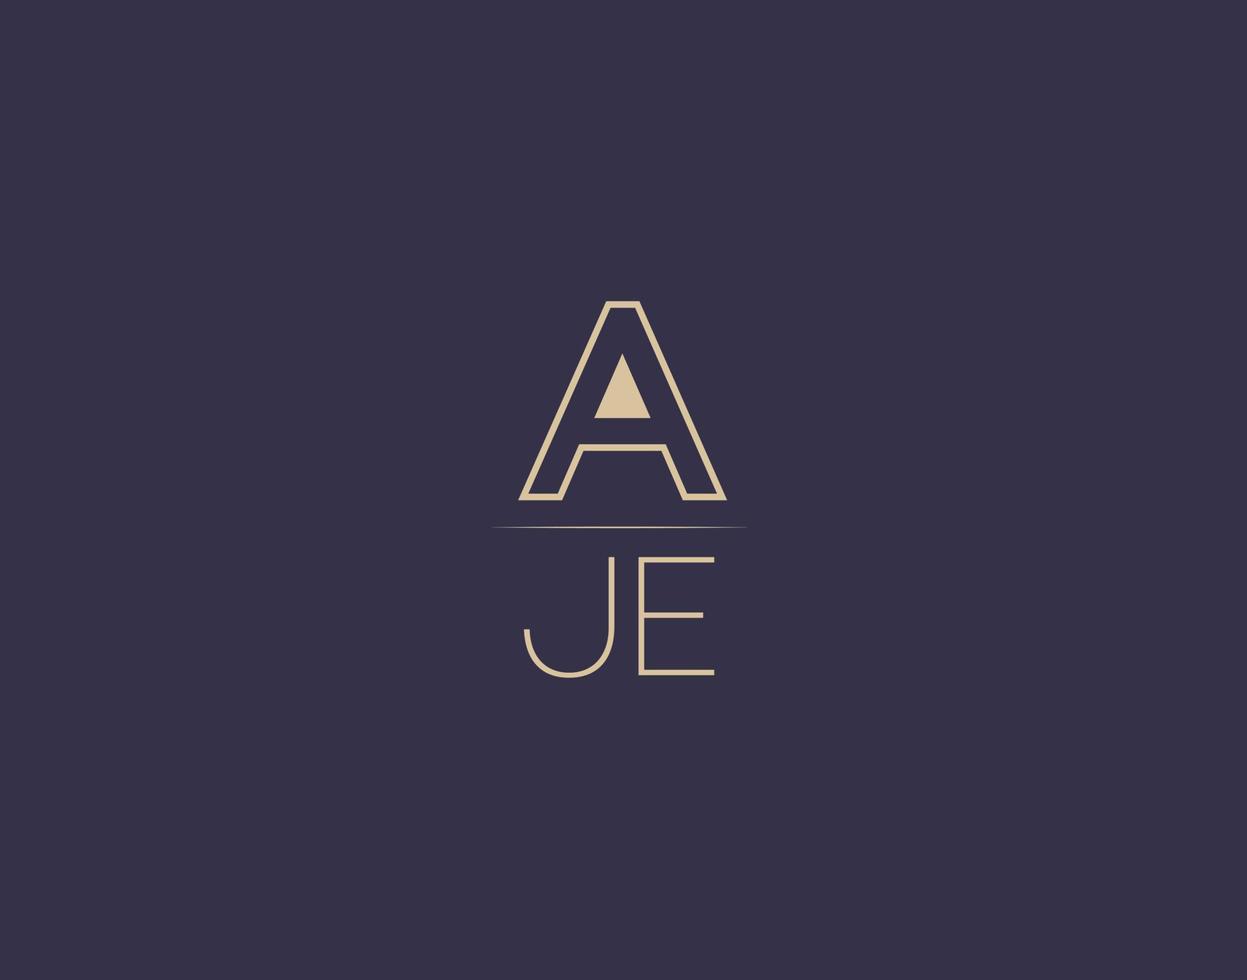 AJE letter logo design modern minimalist vector images